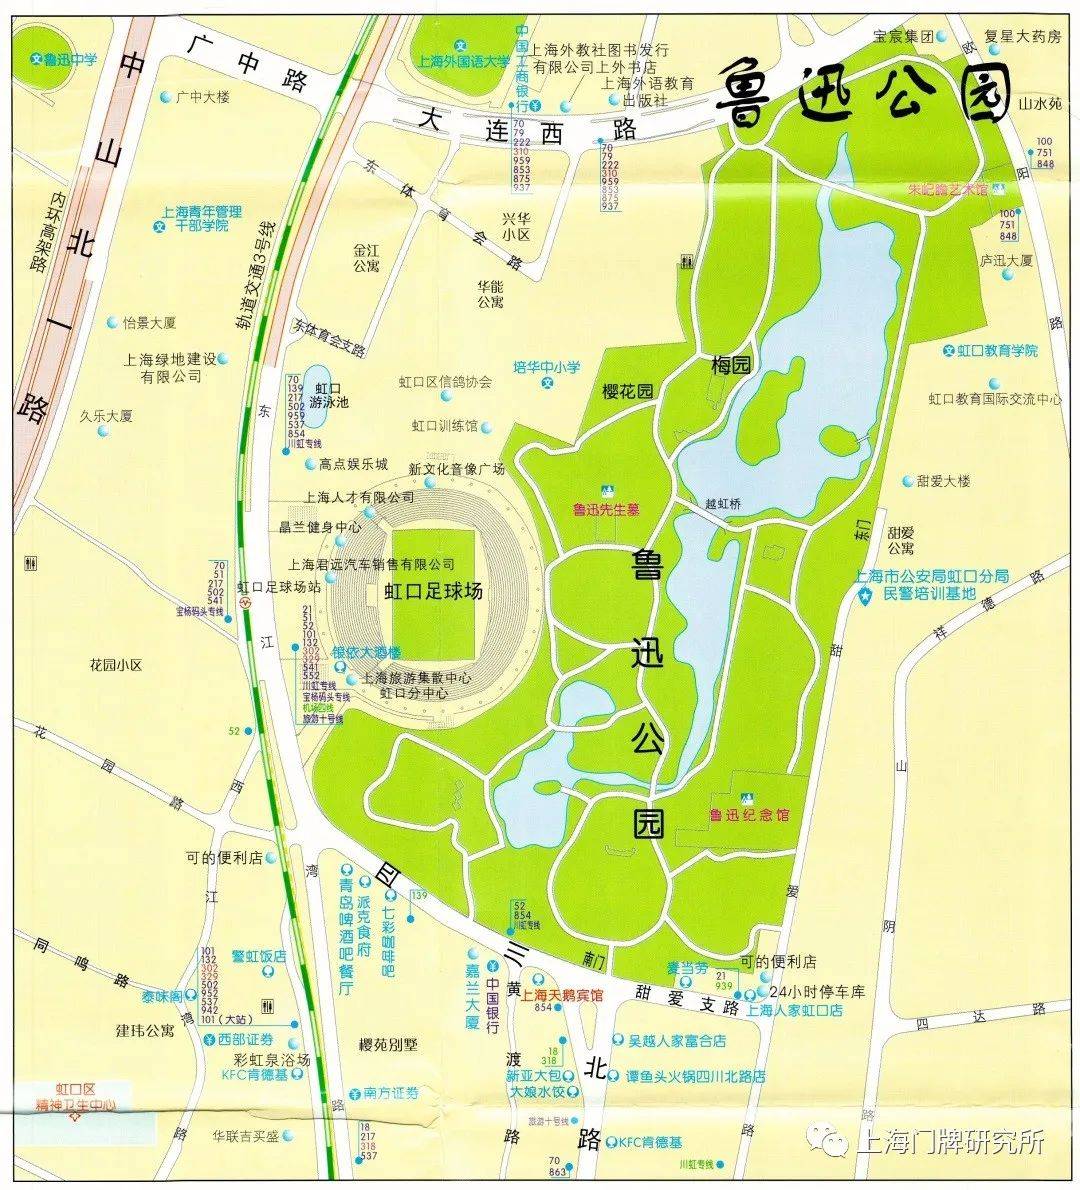 鲁迅公园区域地图(2005年)1956年鲁迅逝世20周年之际,将鲁迅墓自万国